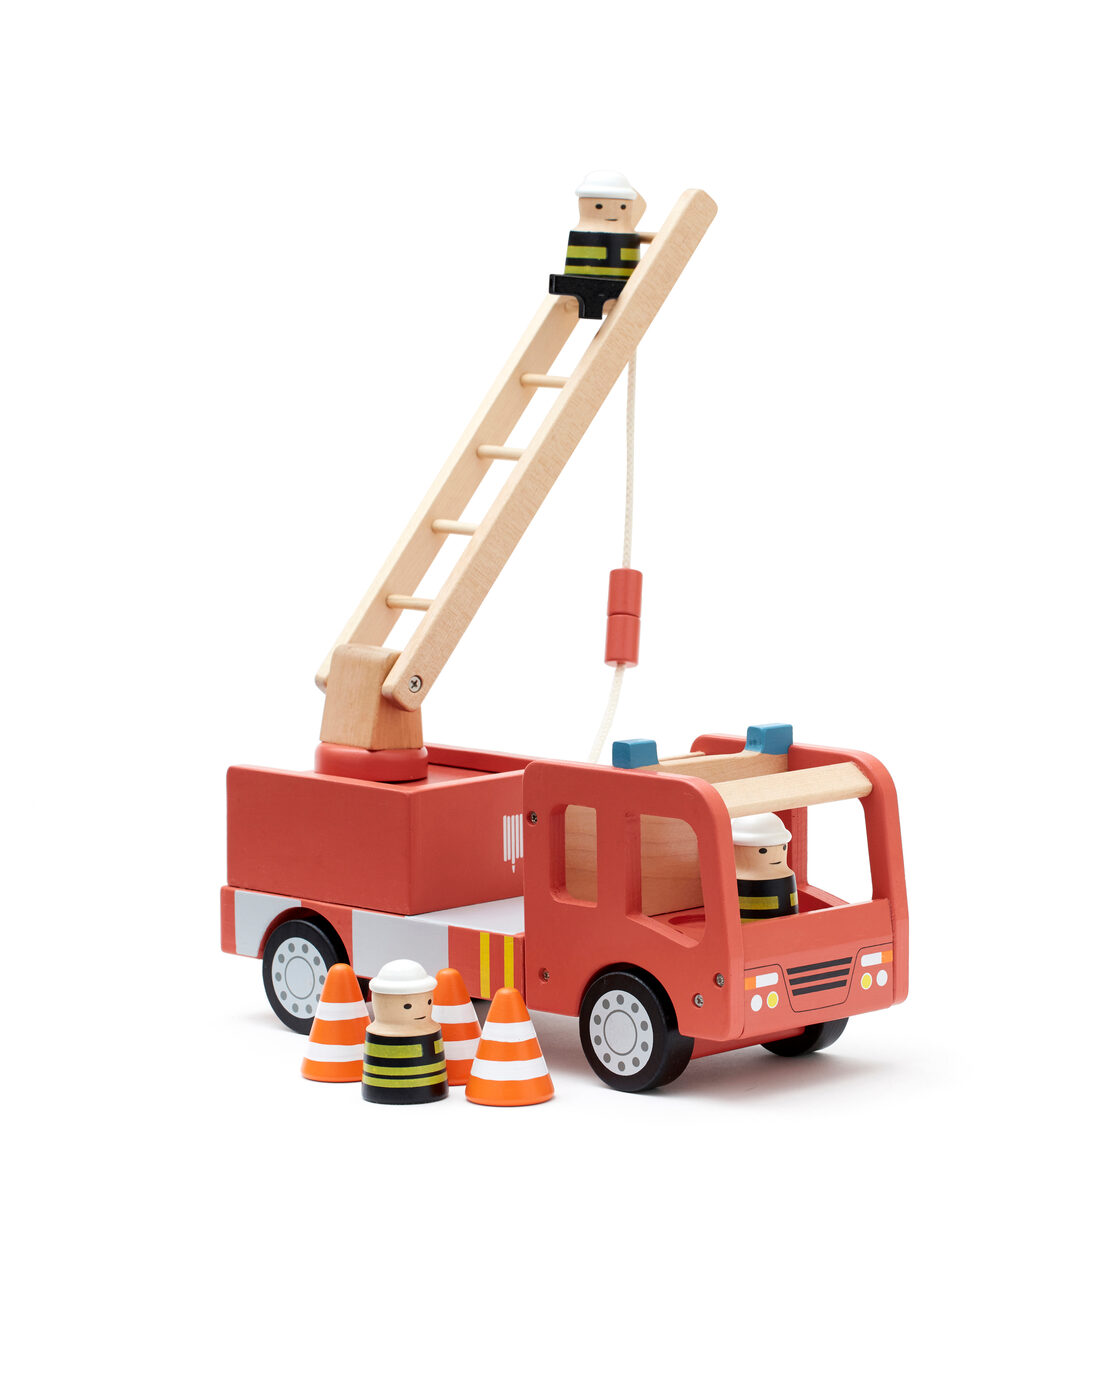 Miniatur-Feuerwehrauto soll Kinder fürs Löschen und Helfen begeistern